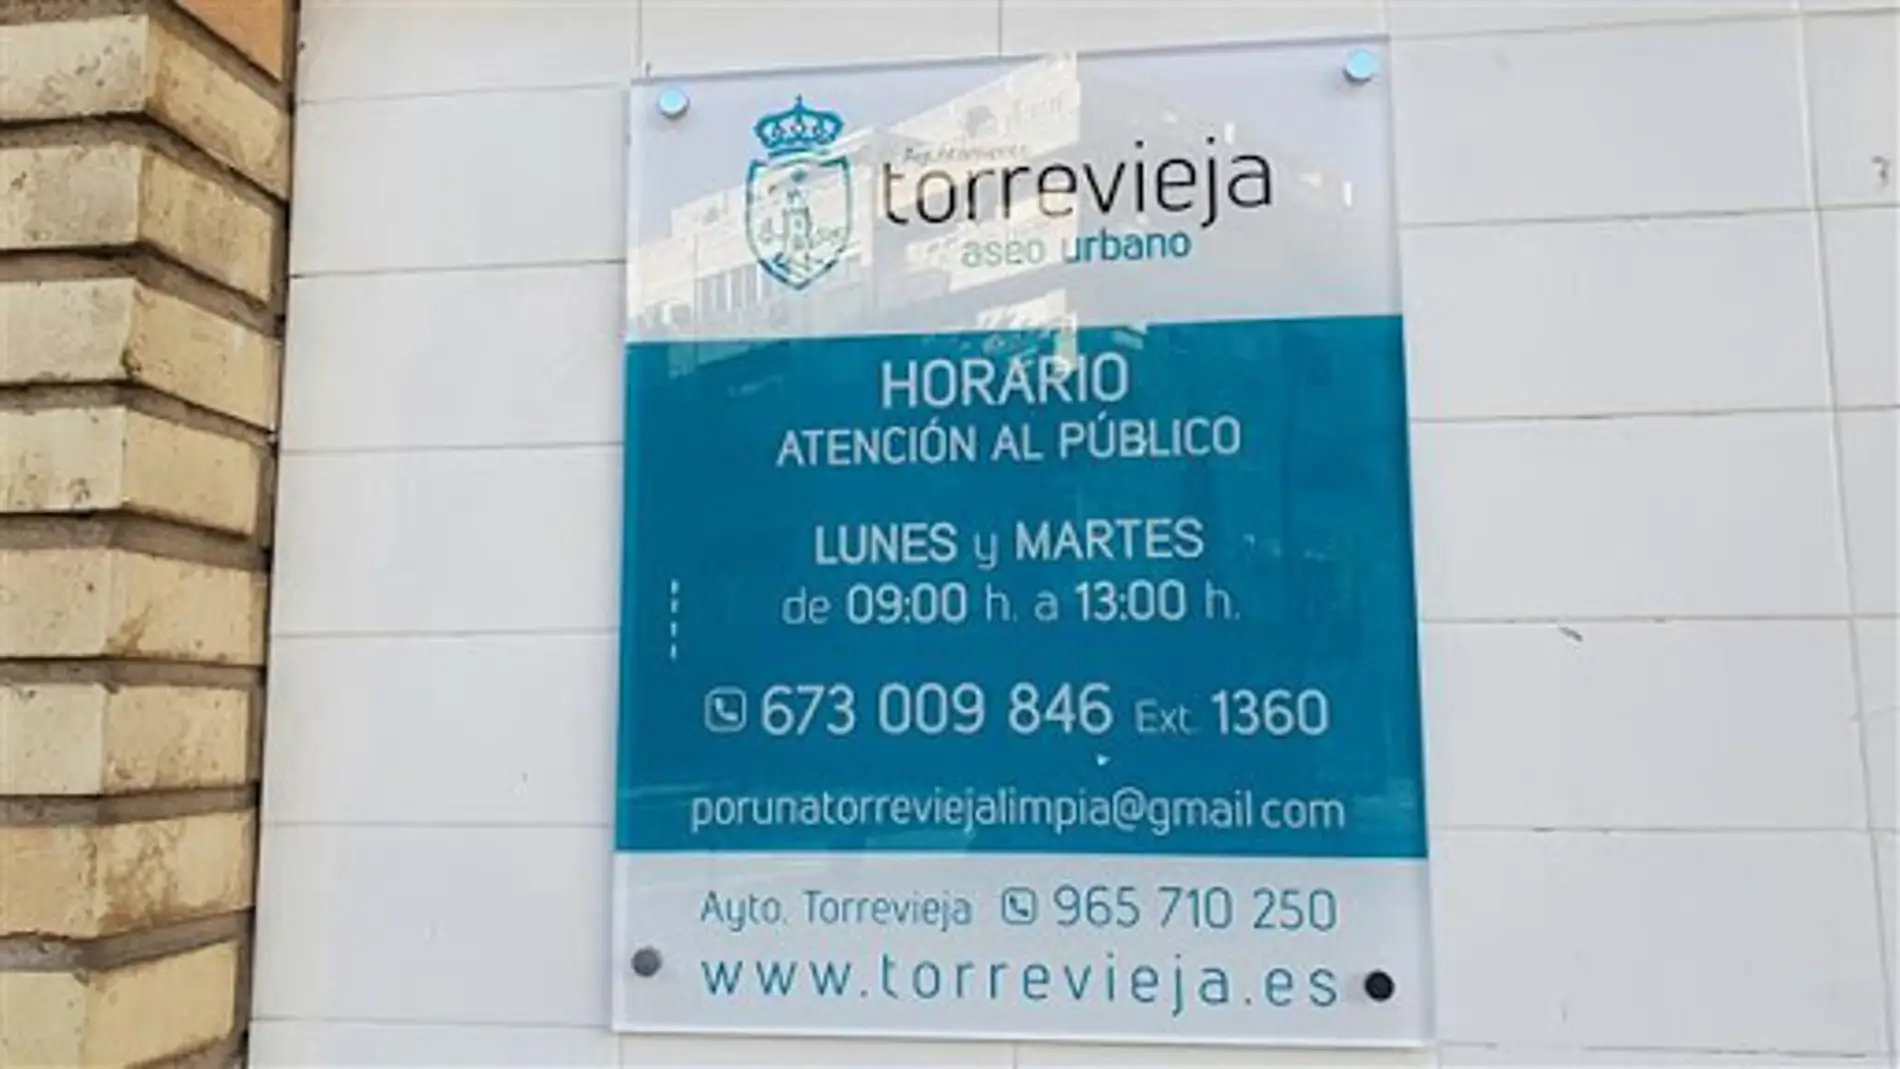 La concejalía de Aseo Urbano del Ayuntamiento de Torrevieja tiene un horario de atención al ciudadano de 9:00 a 13:00 horas, los lunes y martes, en las oficinas municipales situadas en la Avda. Dr. Gregorio Marañón, nº 3 